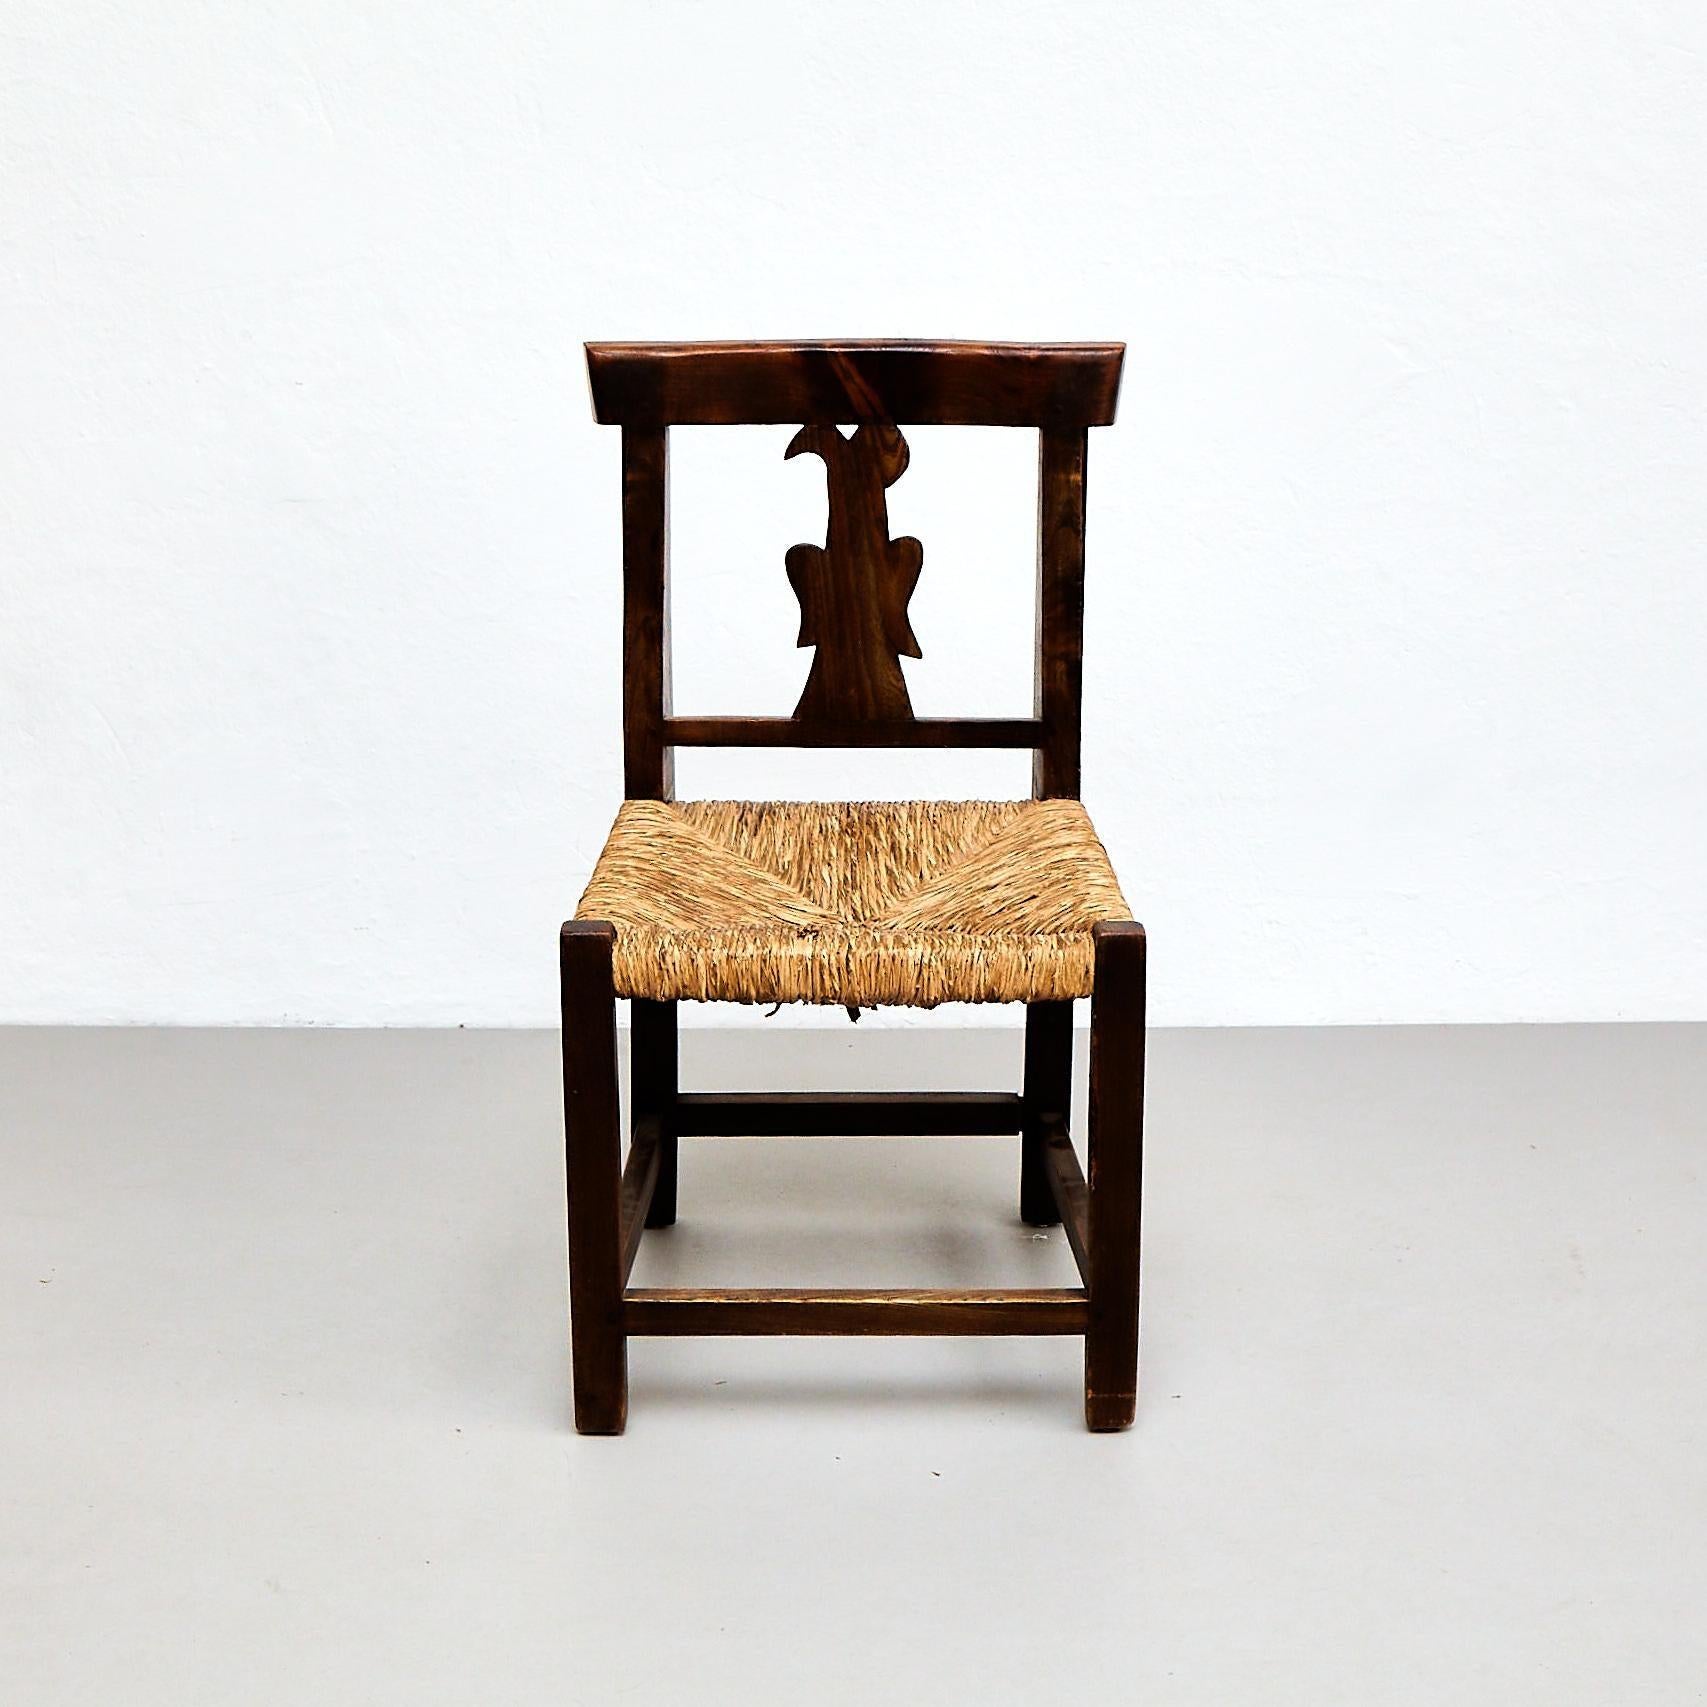 Questo affascinante set di quattro sedie francesi in legno rustico risale al 1950 circa e mette in mostra l'eleganza senza tempo del design francese. Le sedie sono realizzate in legno e rattan di alta qualità e si trovano nelle loro condizioni